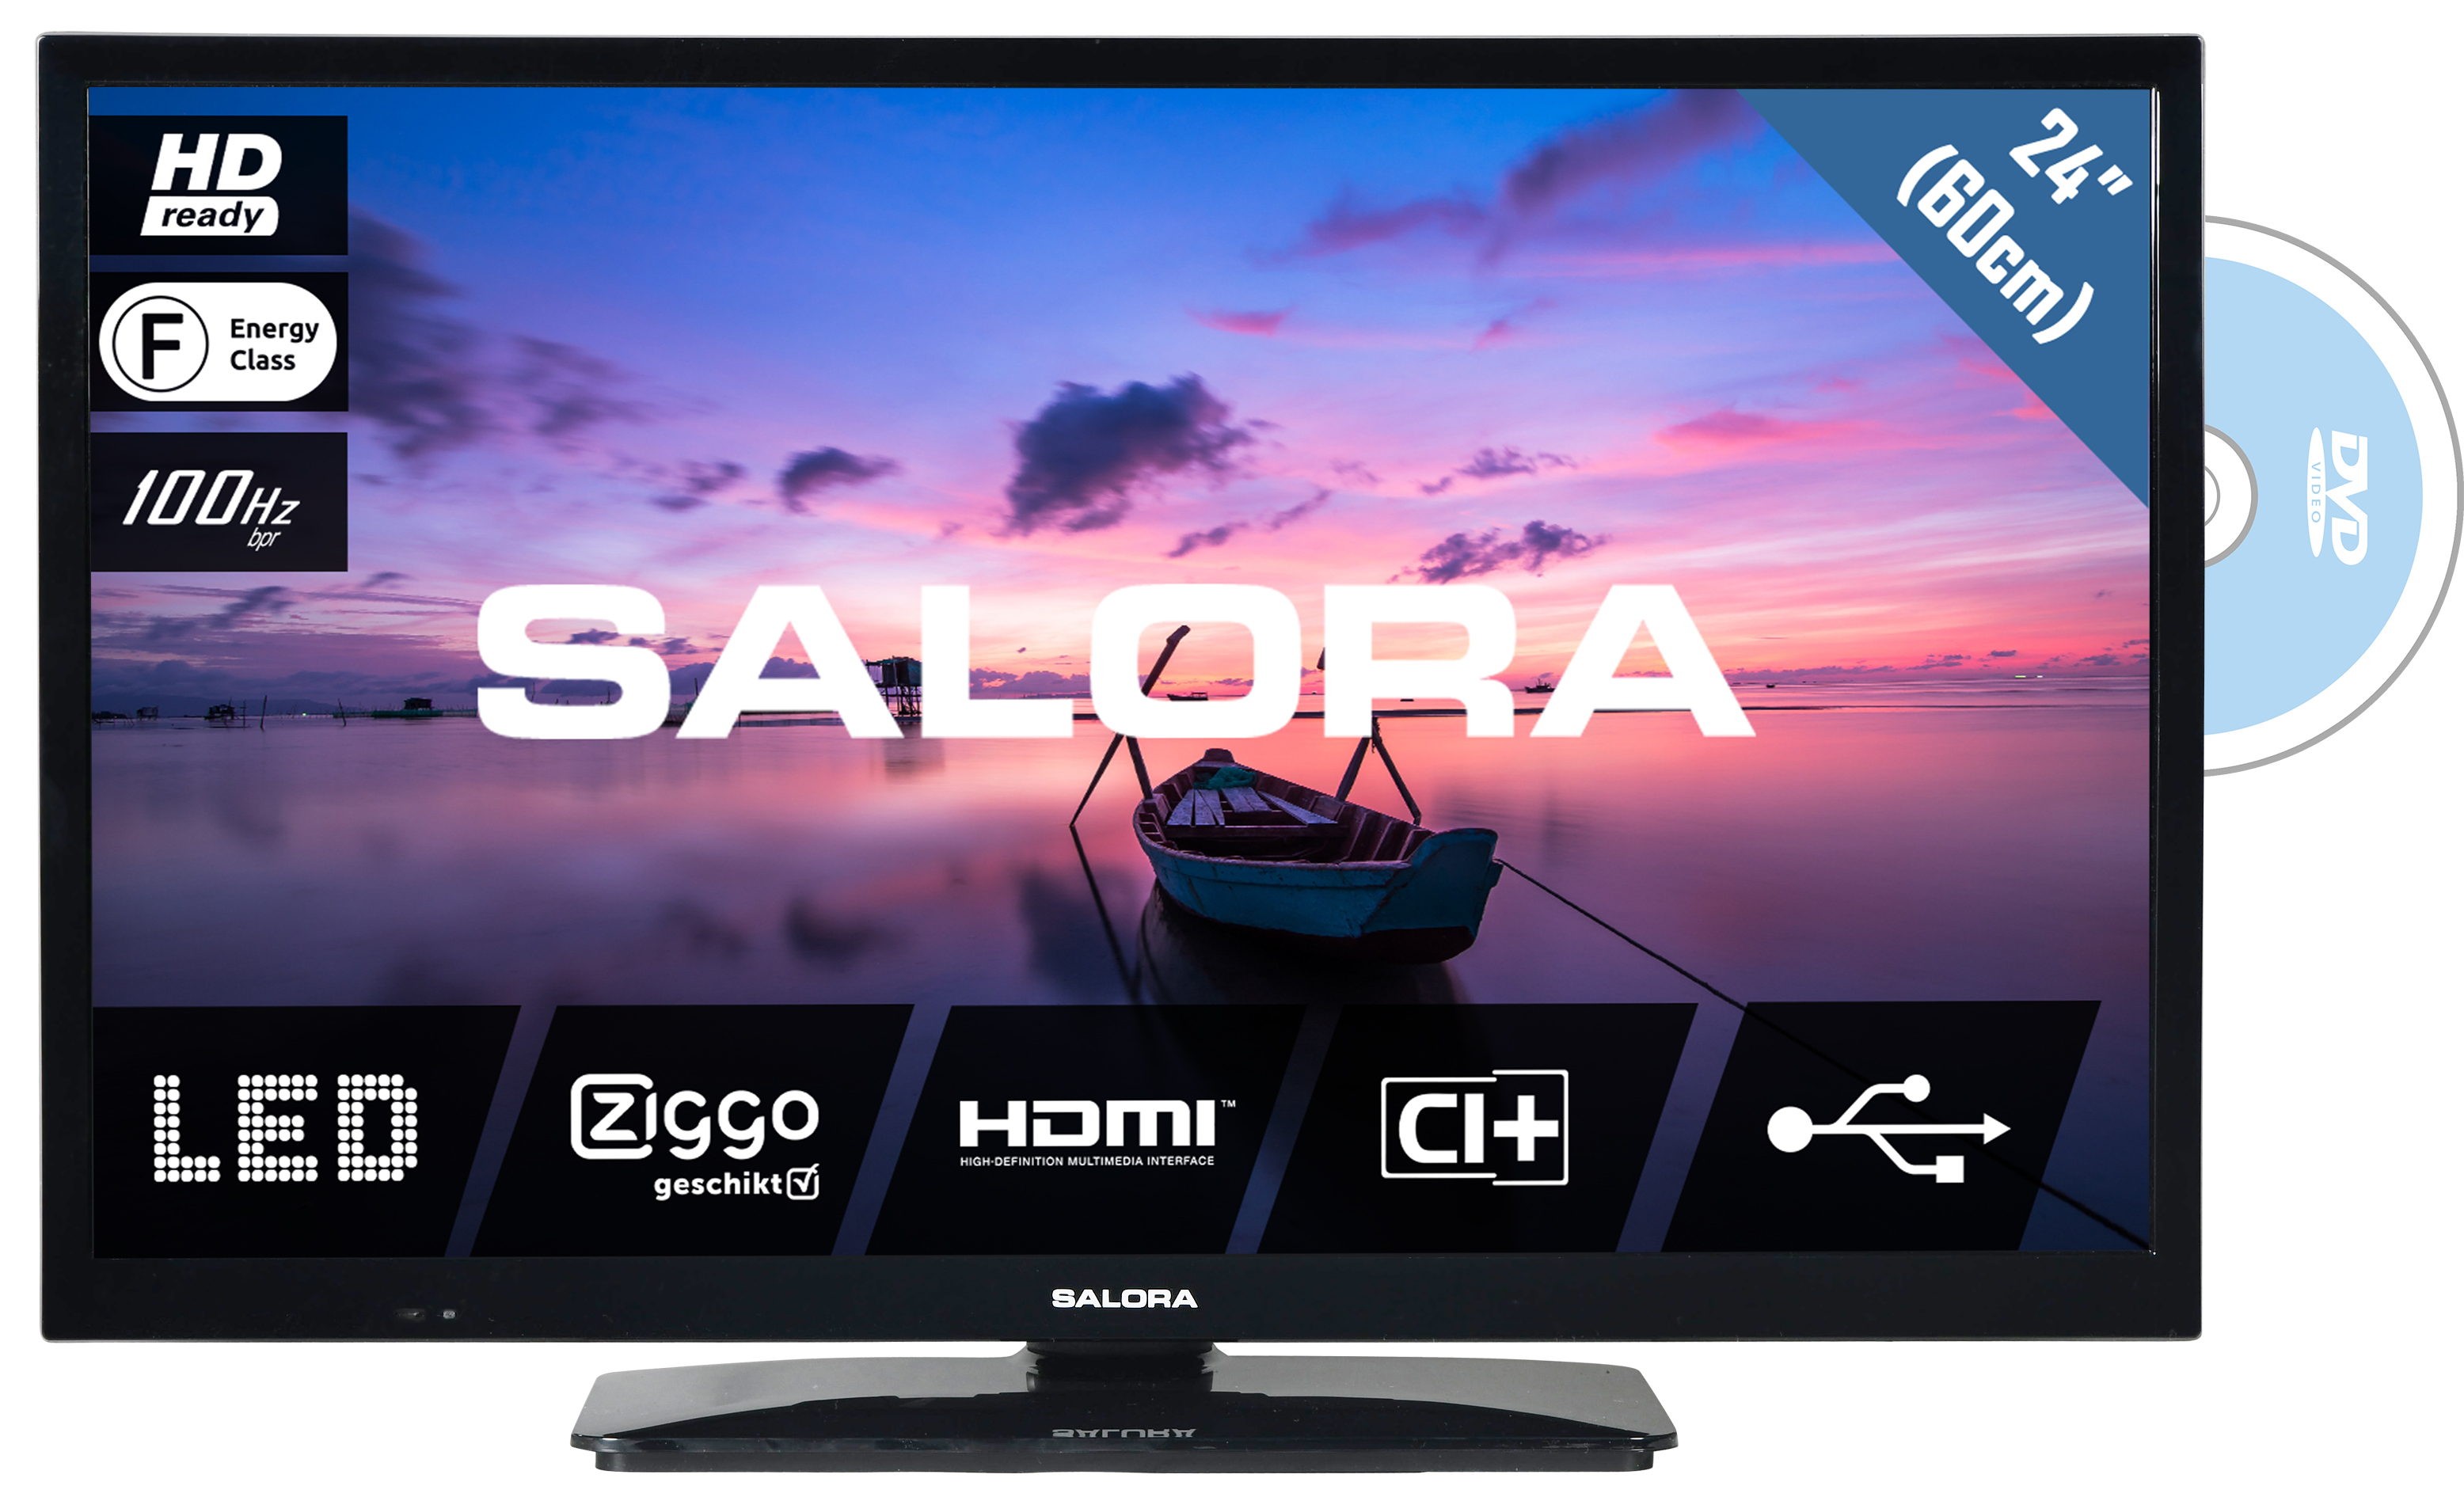 Salora 6500 series 24HDB6505 TV